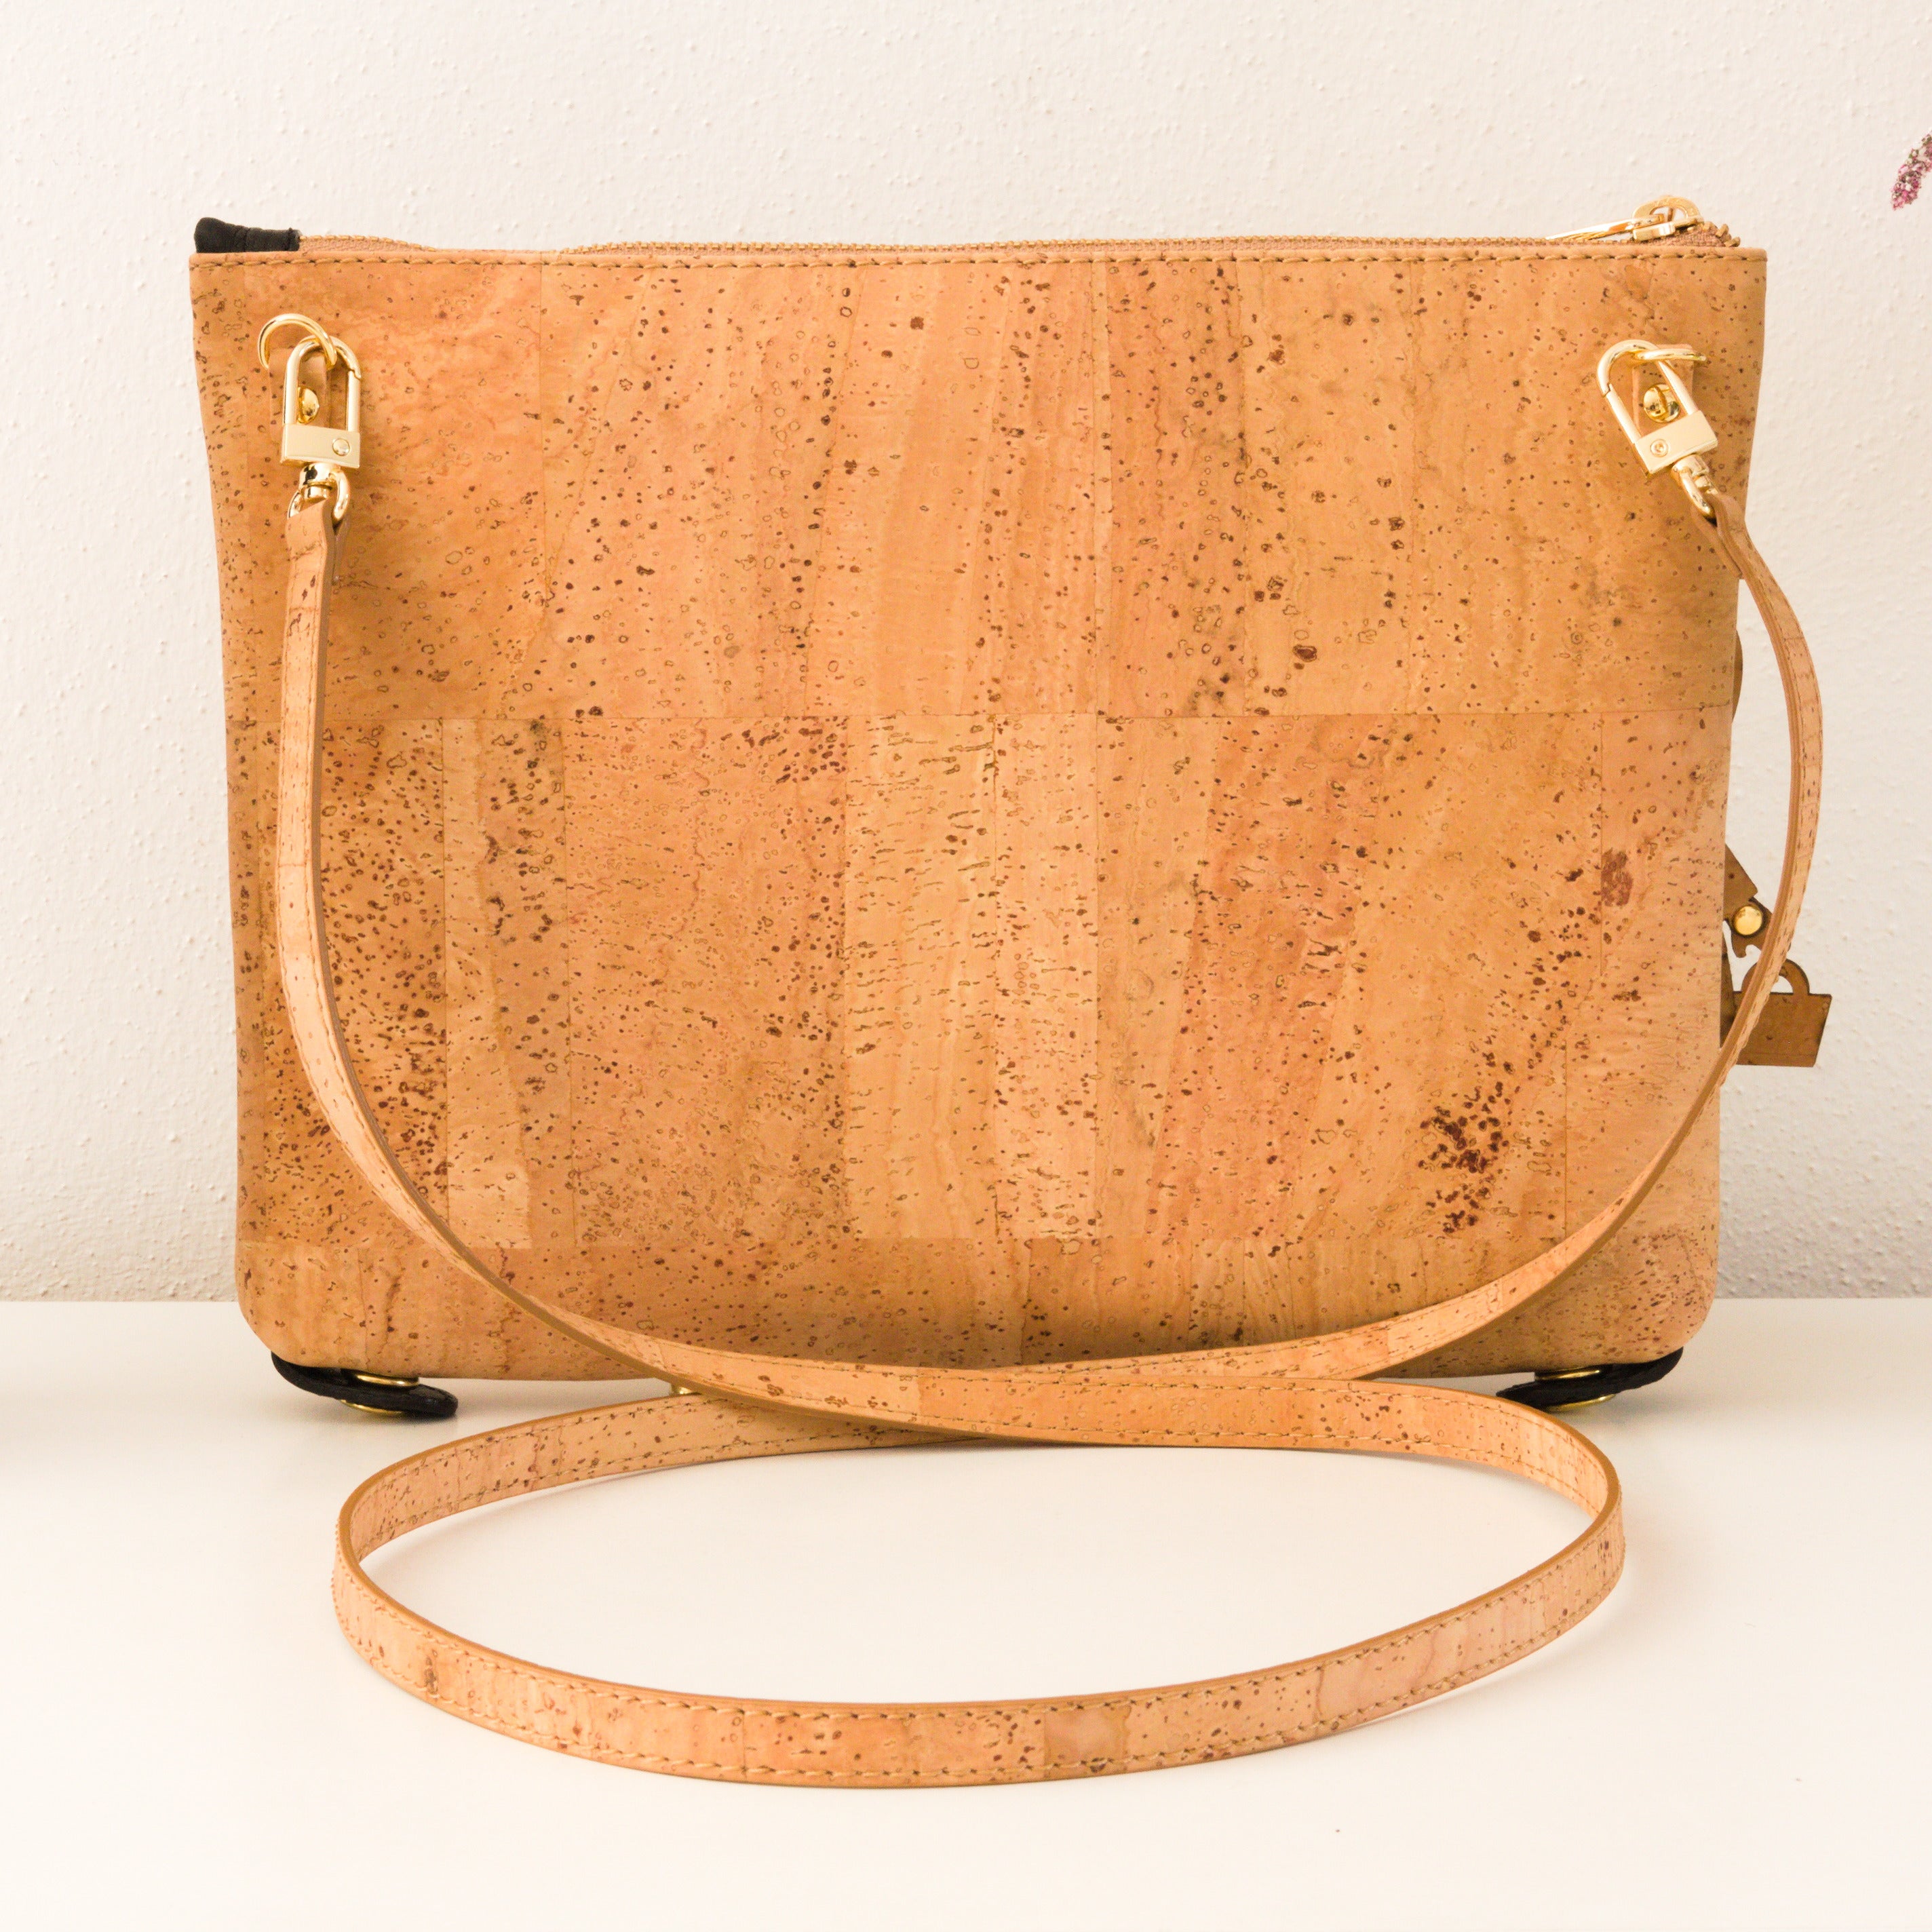 Cork handbag * 2in1 bag * vegan * shoulder bag for women * crossbody * shopper * handmade in Portugal